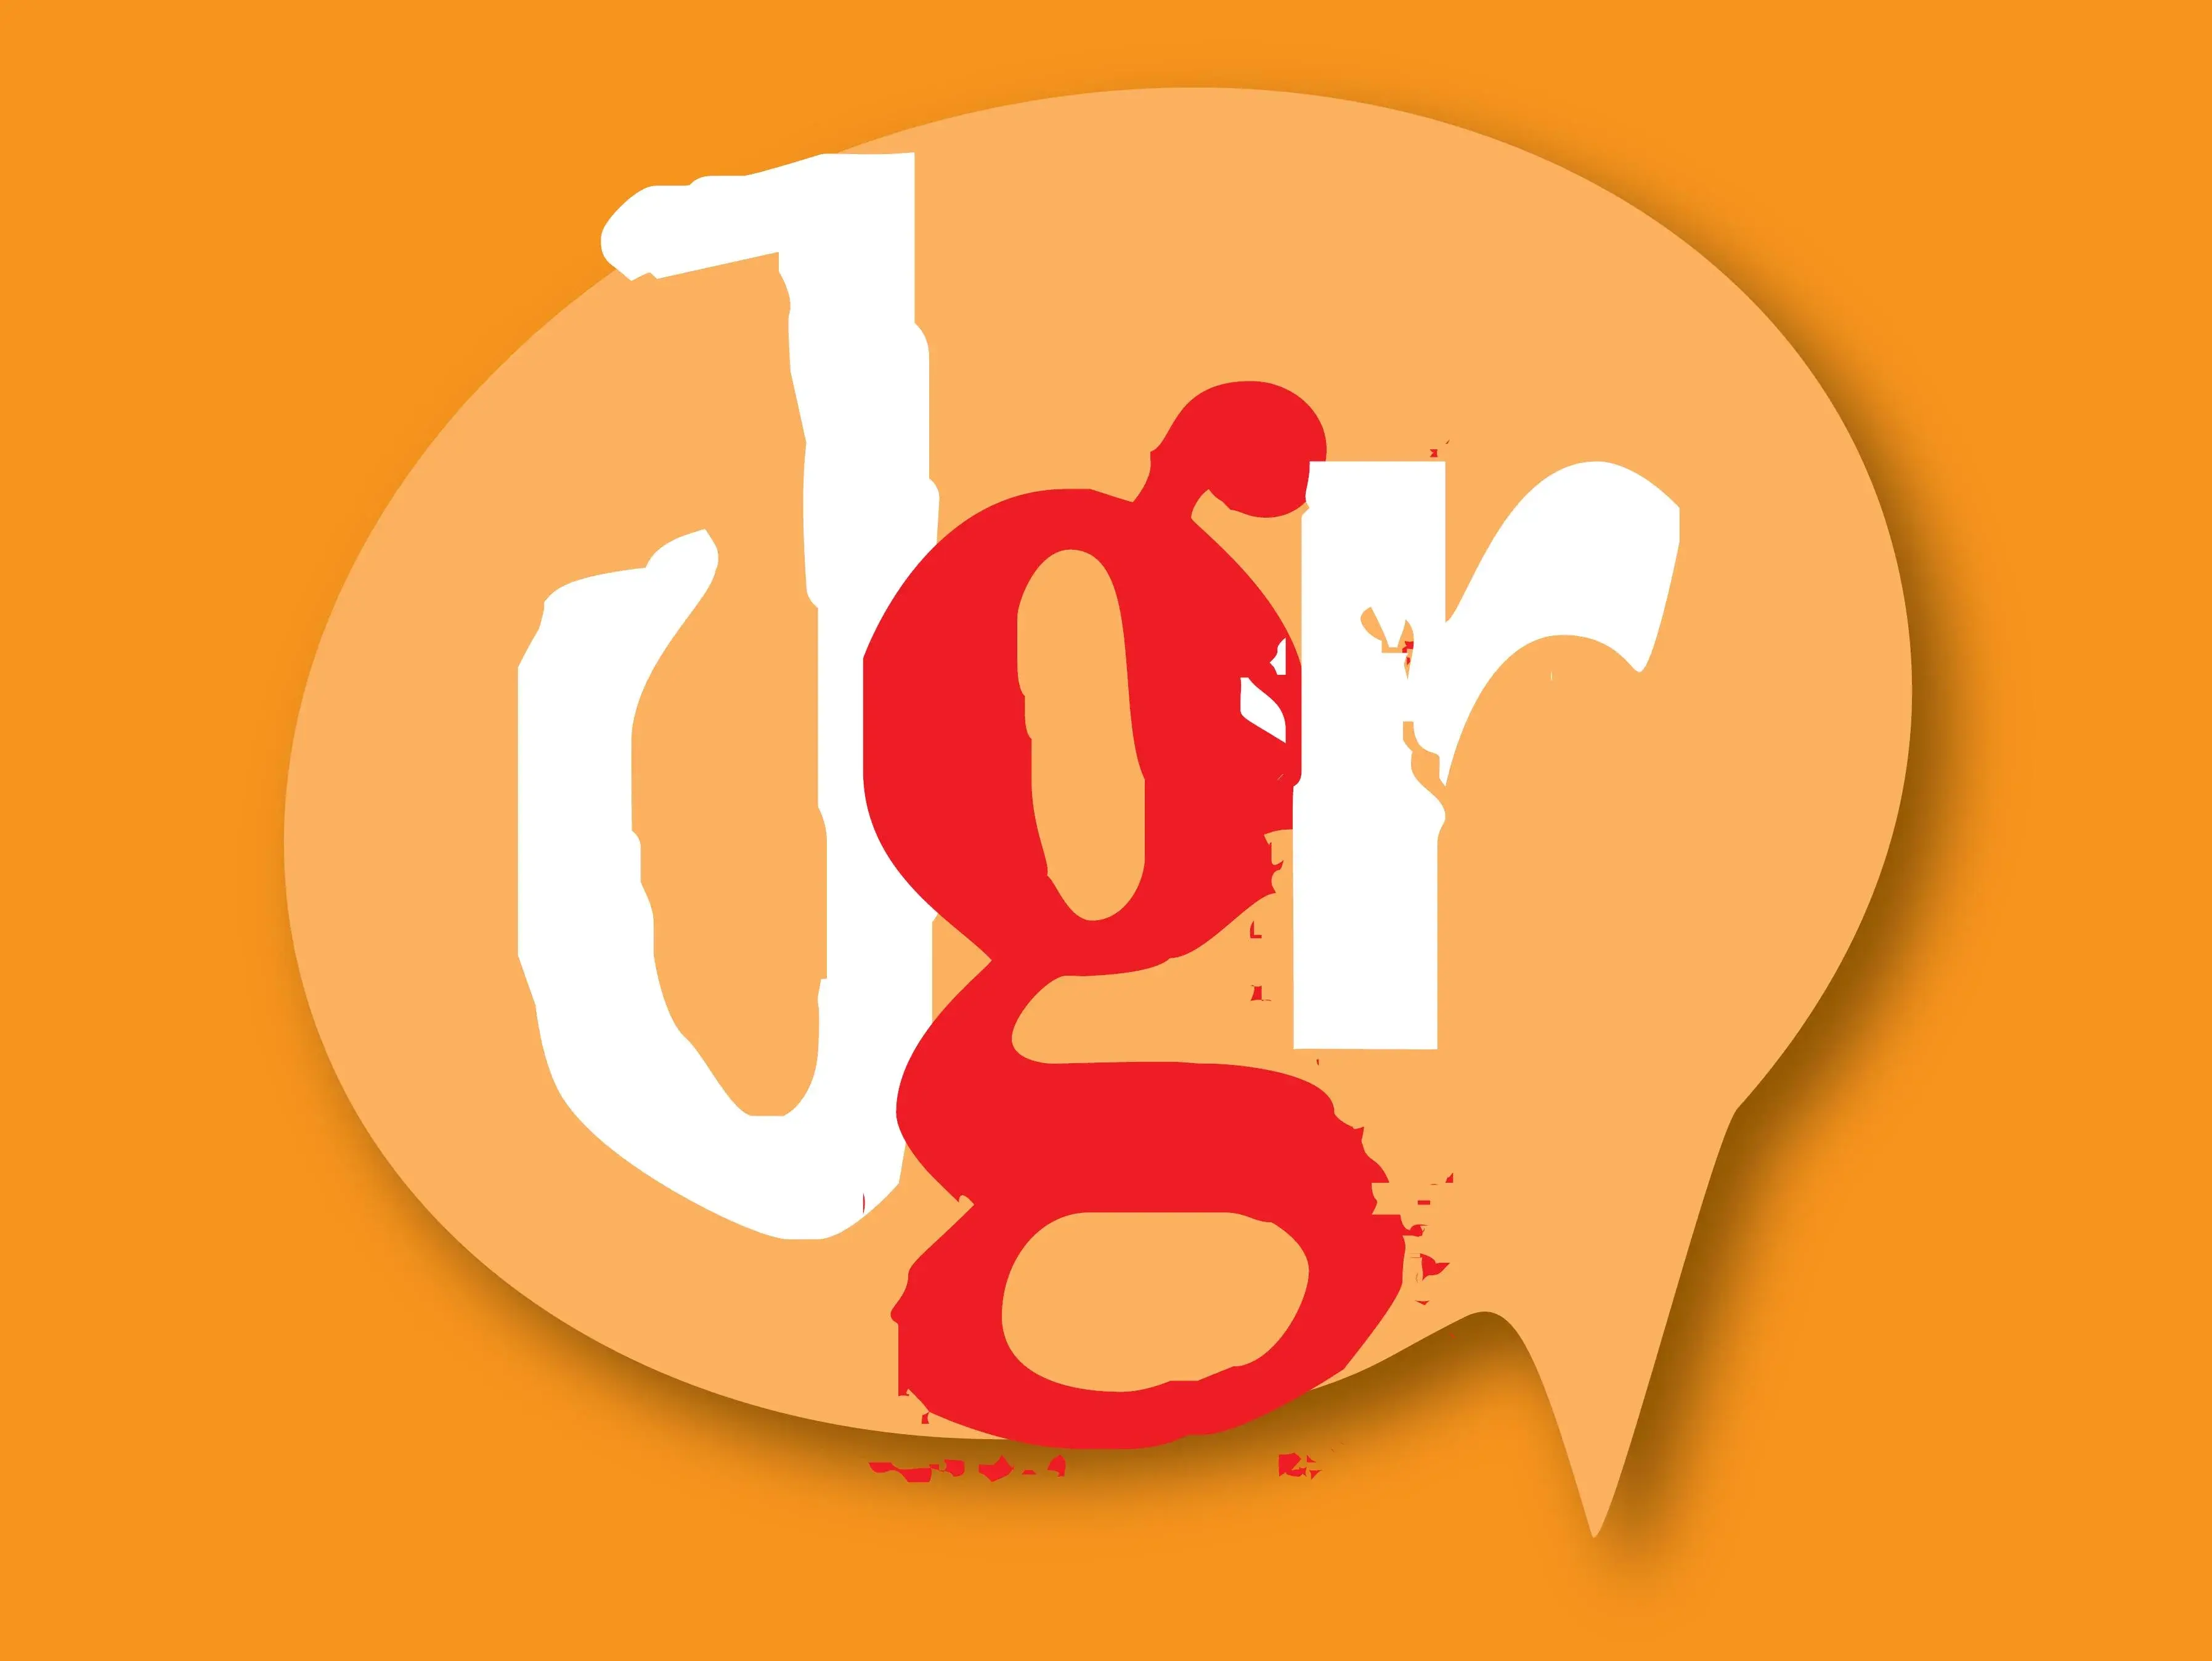 Logo Jugendgemeinderat